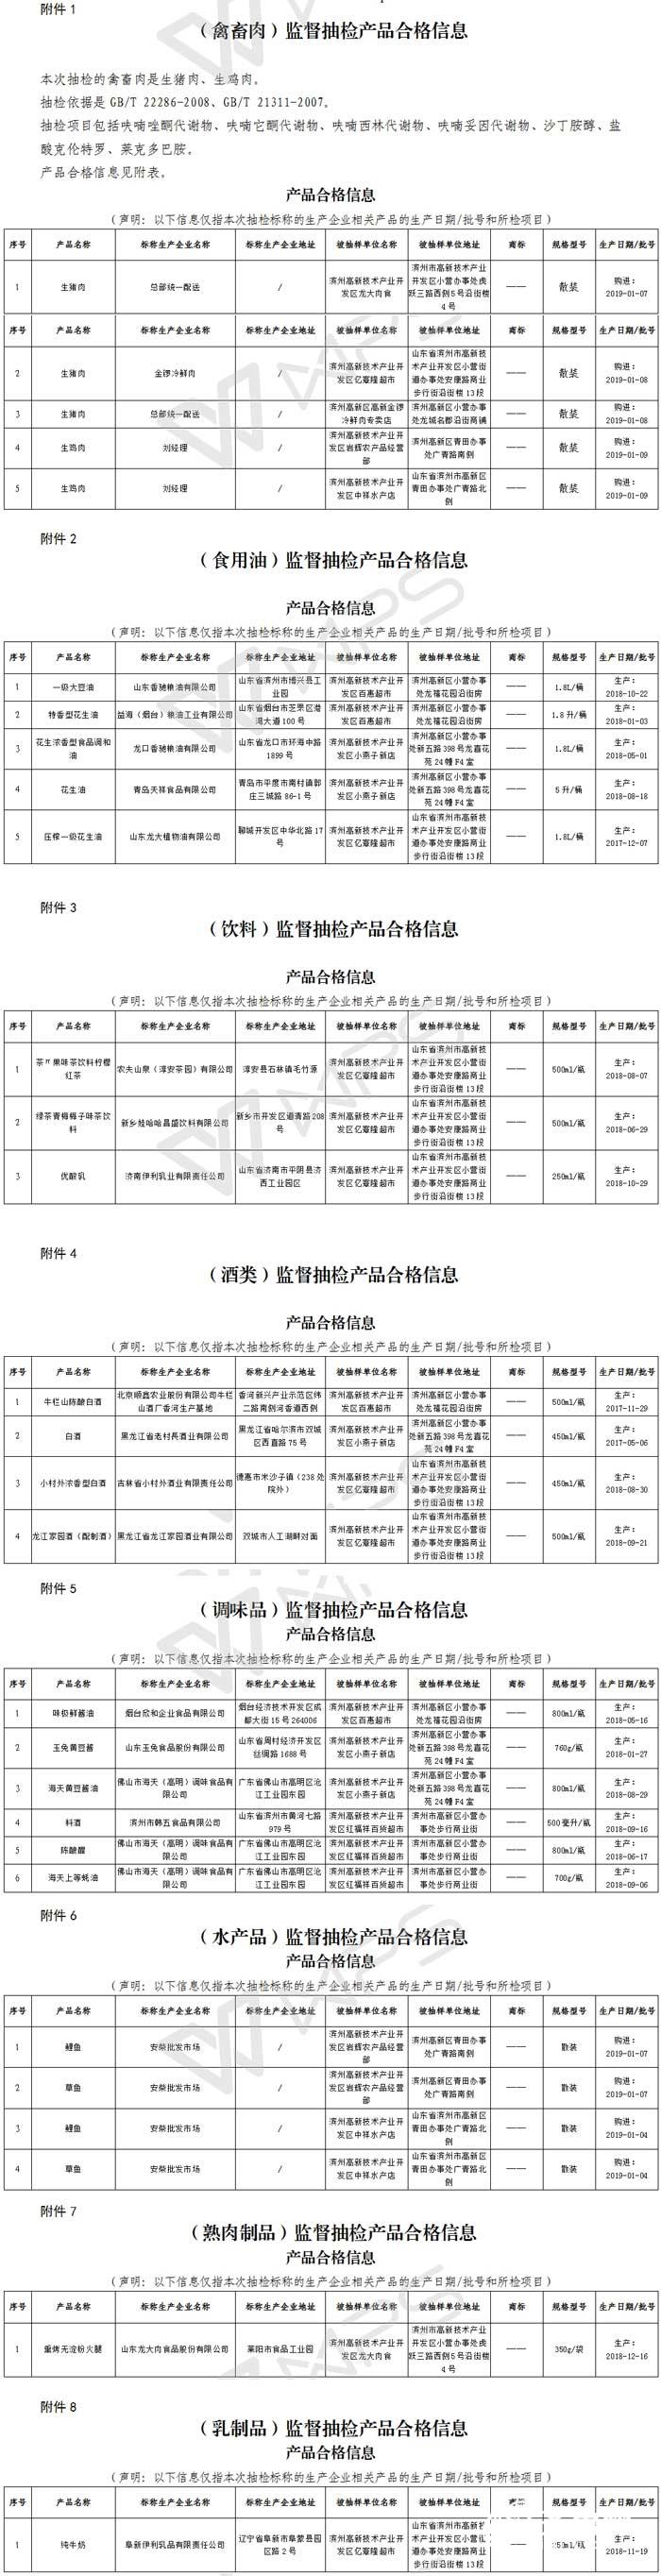 2019年1月-滨州高新区食品安全监督抽检信息通告-29(1).jpg